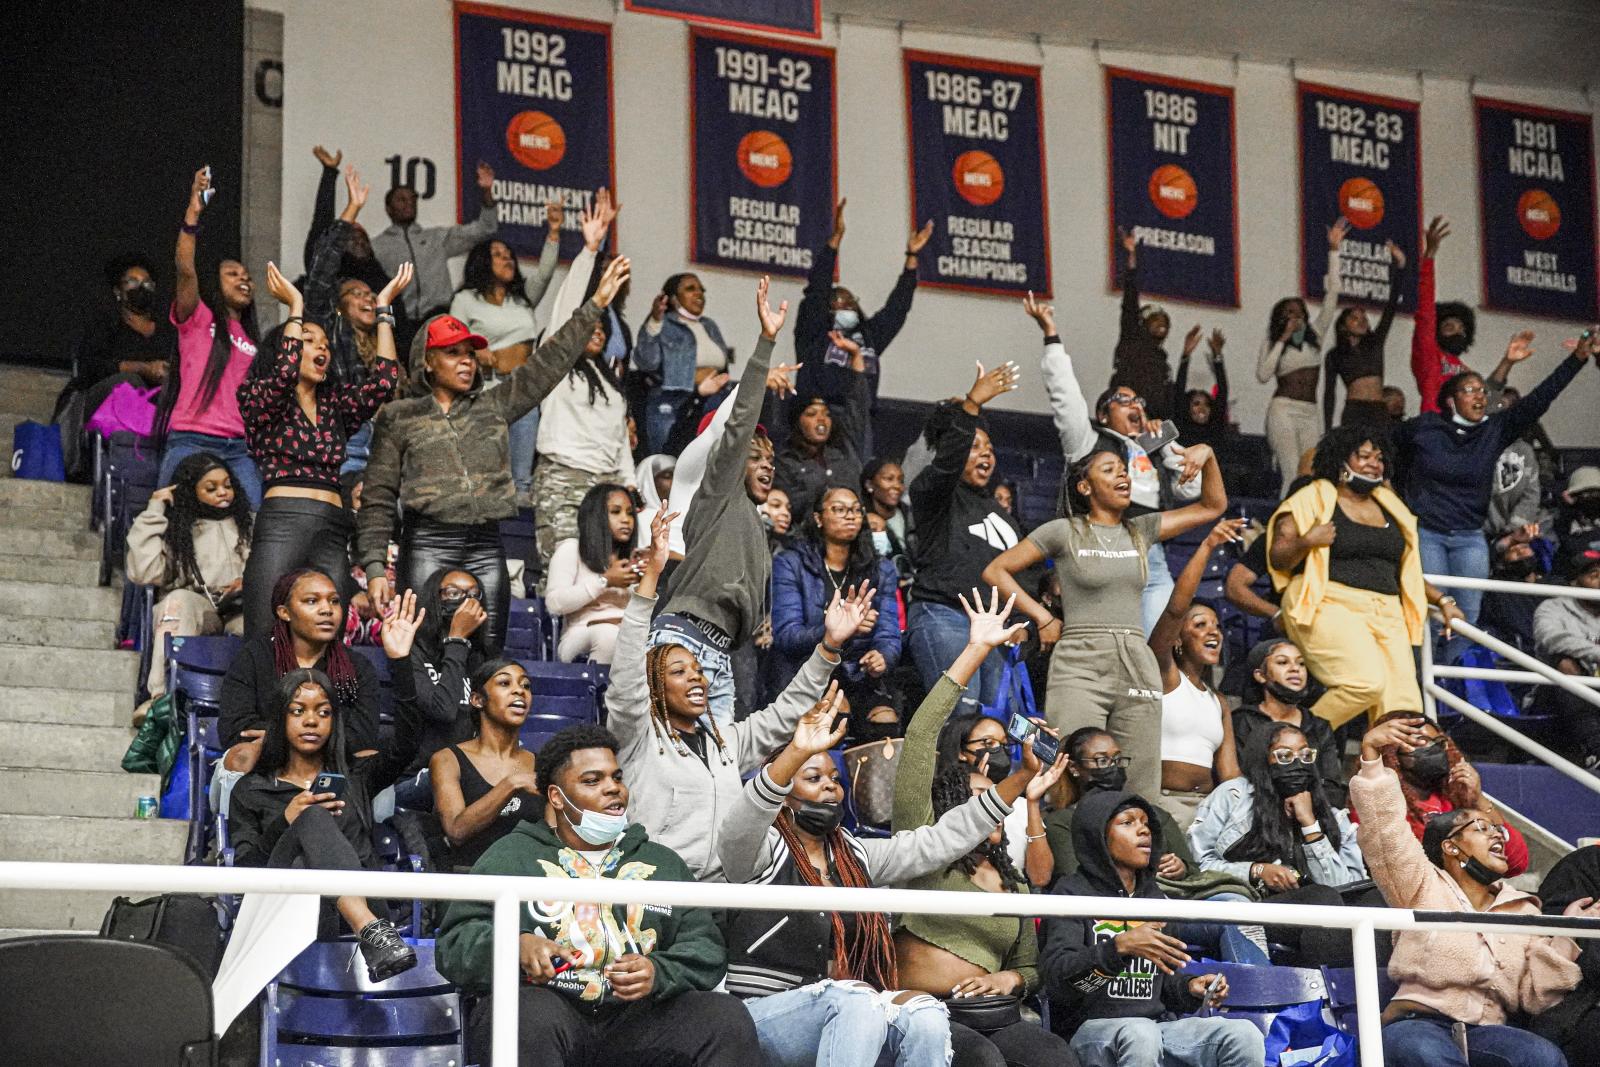 Students cheer at a basketball game